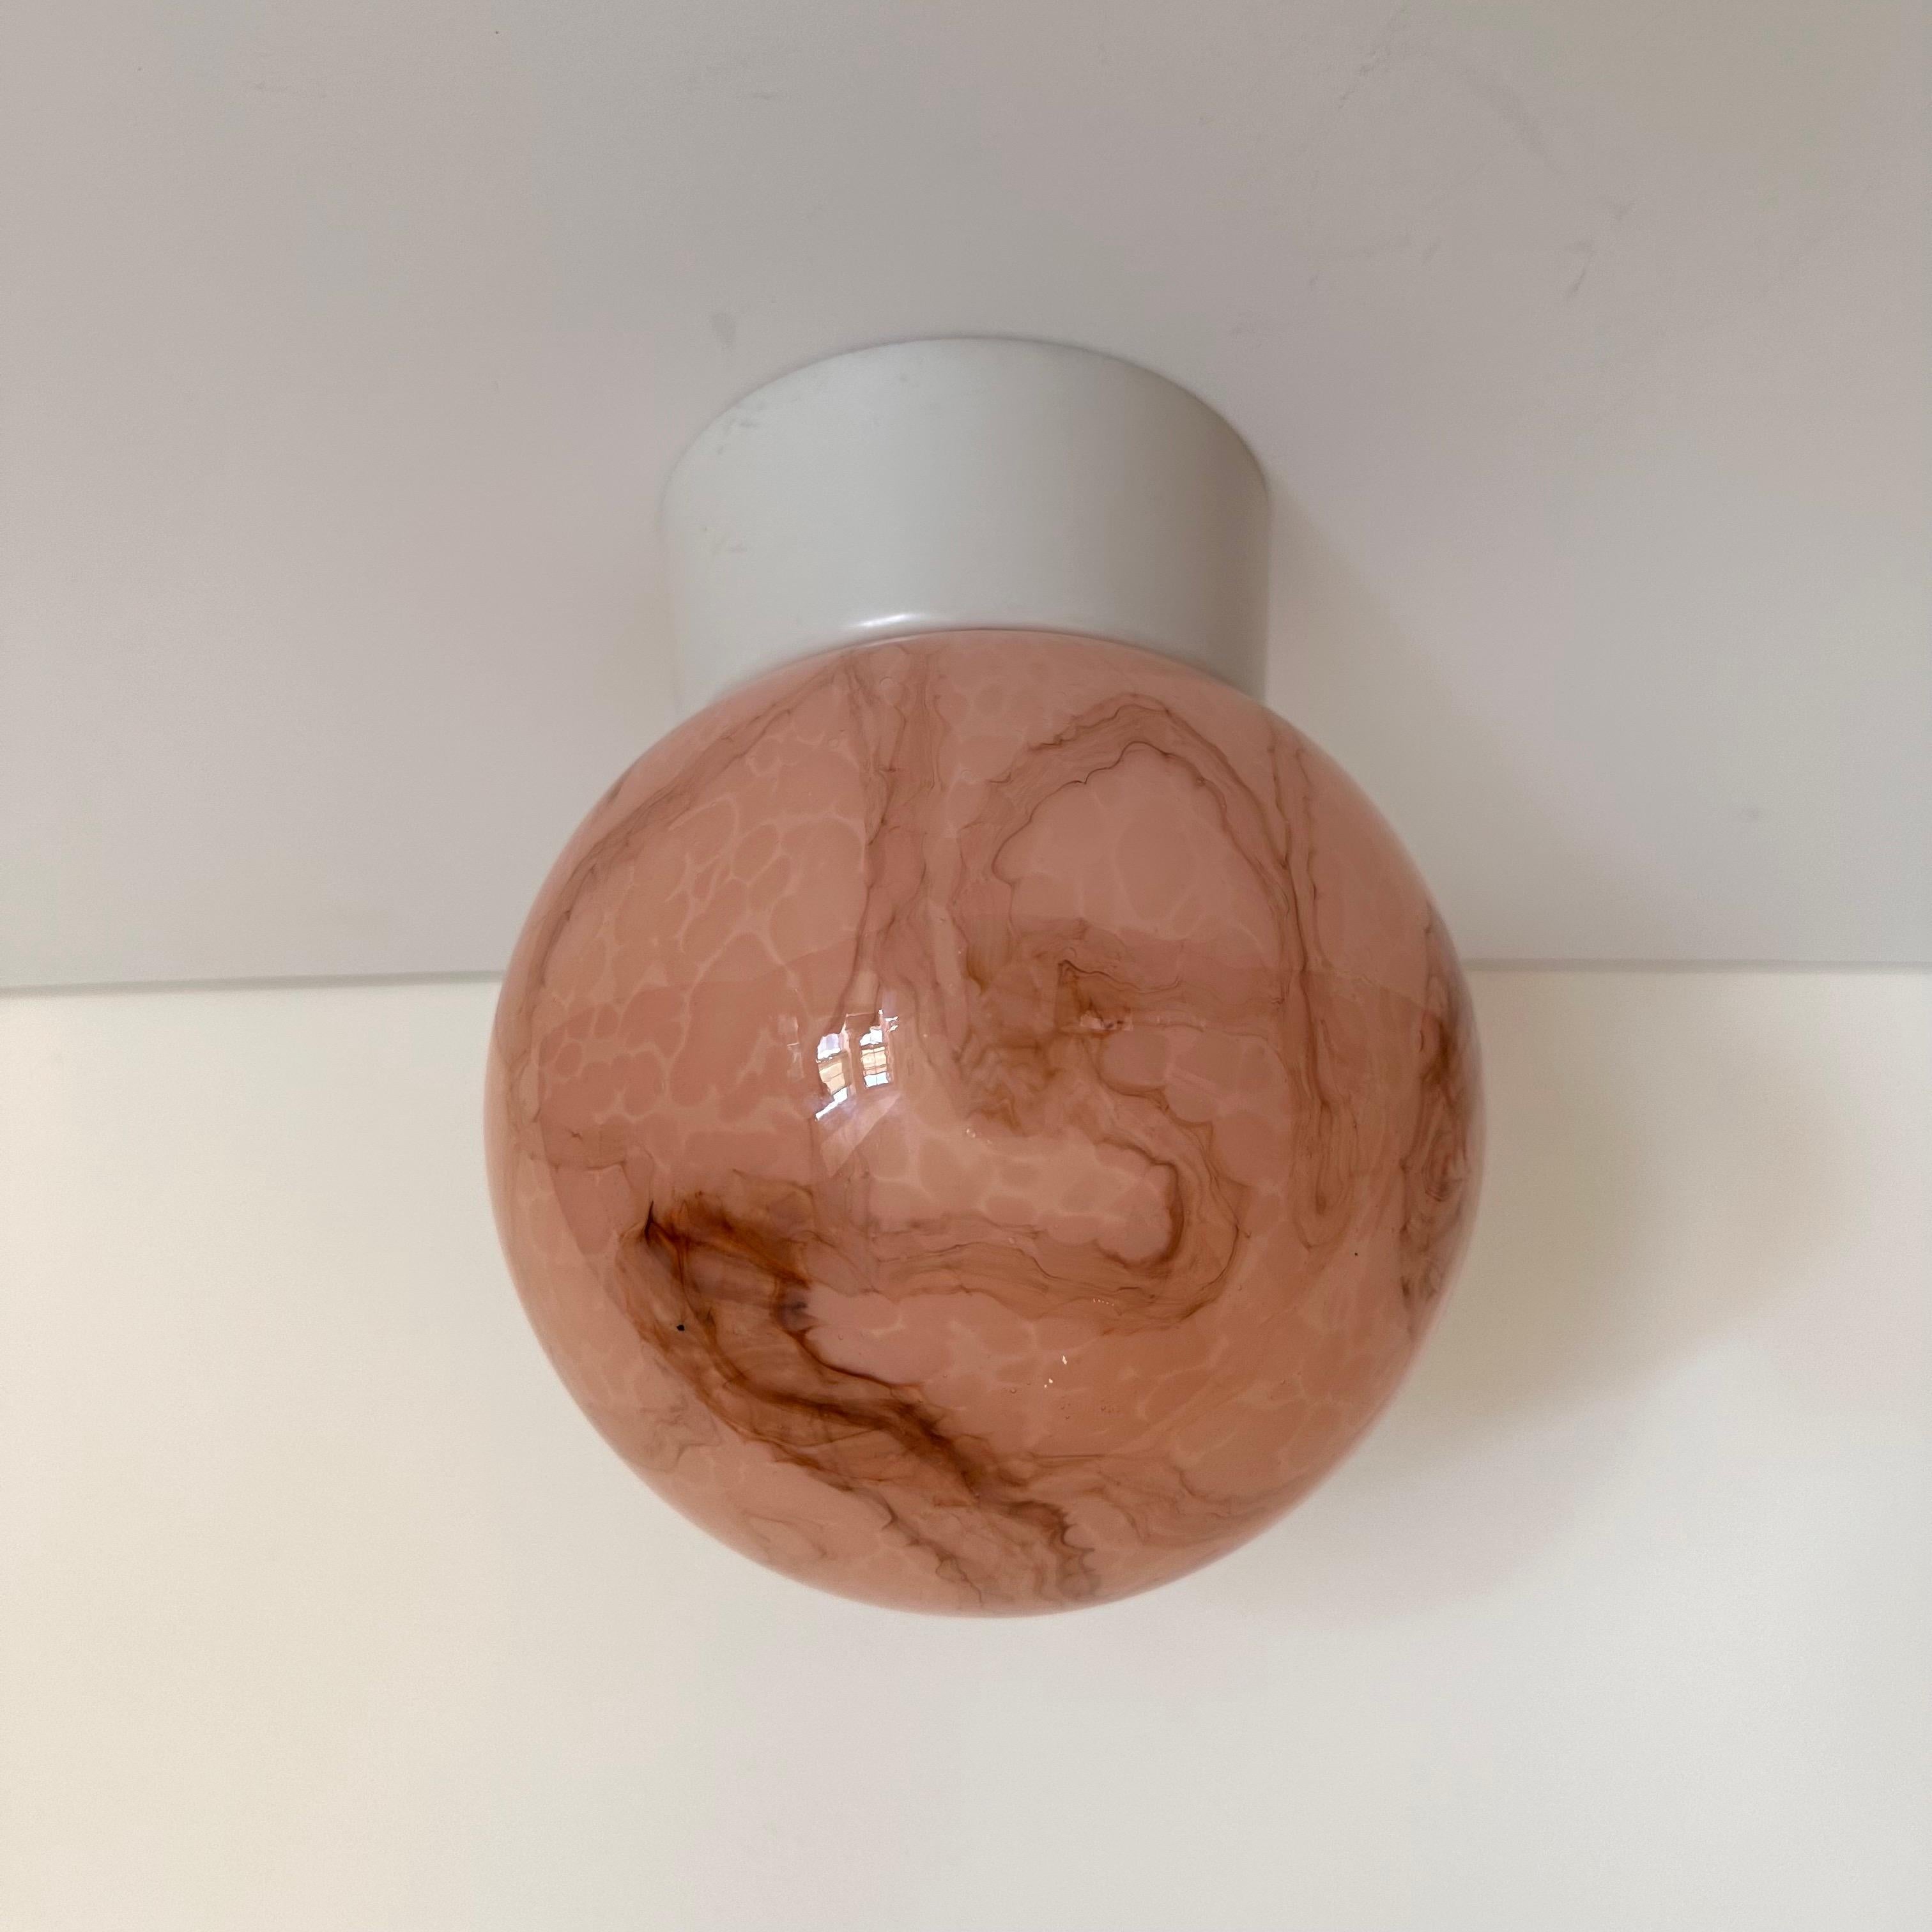 Petite lampe vintage à encastrer avec un globe sphérique en verre dans de magnifiques teintes variées de rose et d'ambre tourbillonnants. Un luminaire charmant et féminin à l'effet tie-dye, magnifiquement exécuté en verre. Le globe est fileté et se